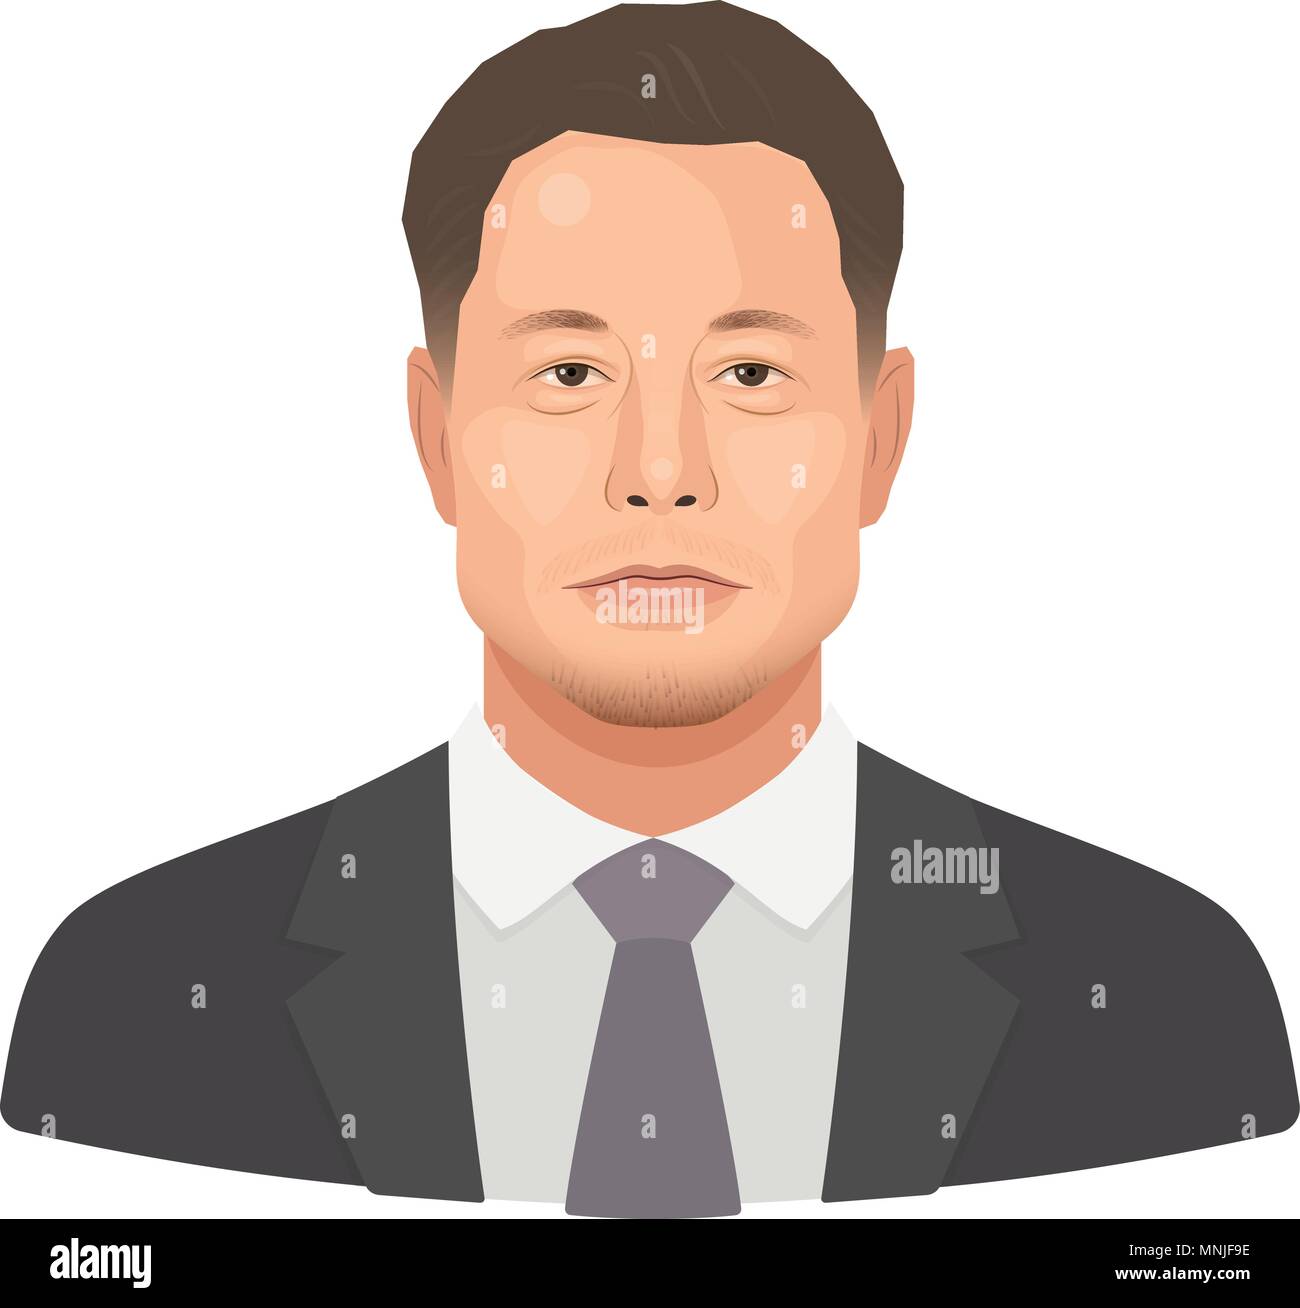 Mai, 2018. Elon Reeve Moschus - die berühmten Unternehmer und Gründer, reichste Geschäftsmann. Vektor flachbild Portrait auf einem weißen Hintergrund. Stock Vektor